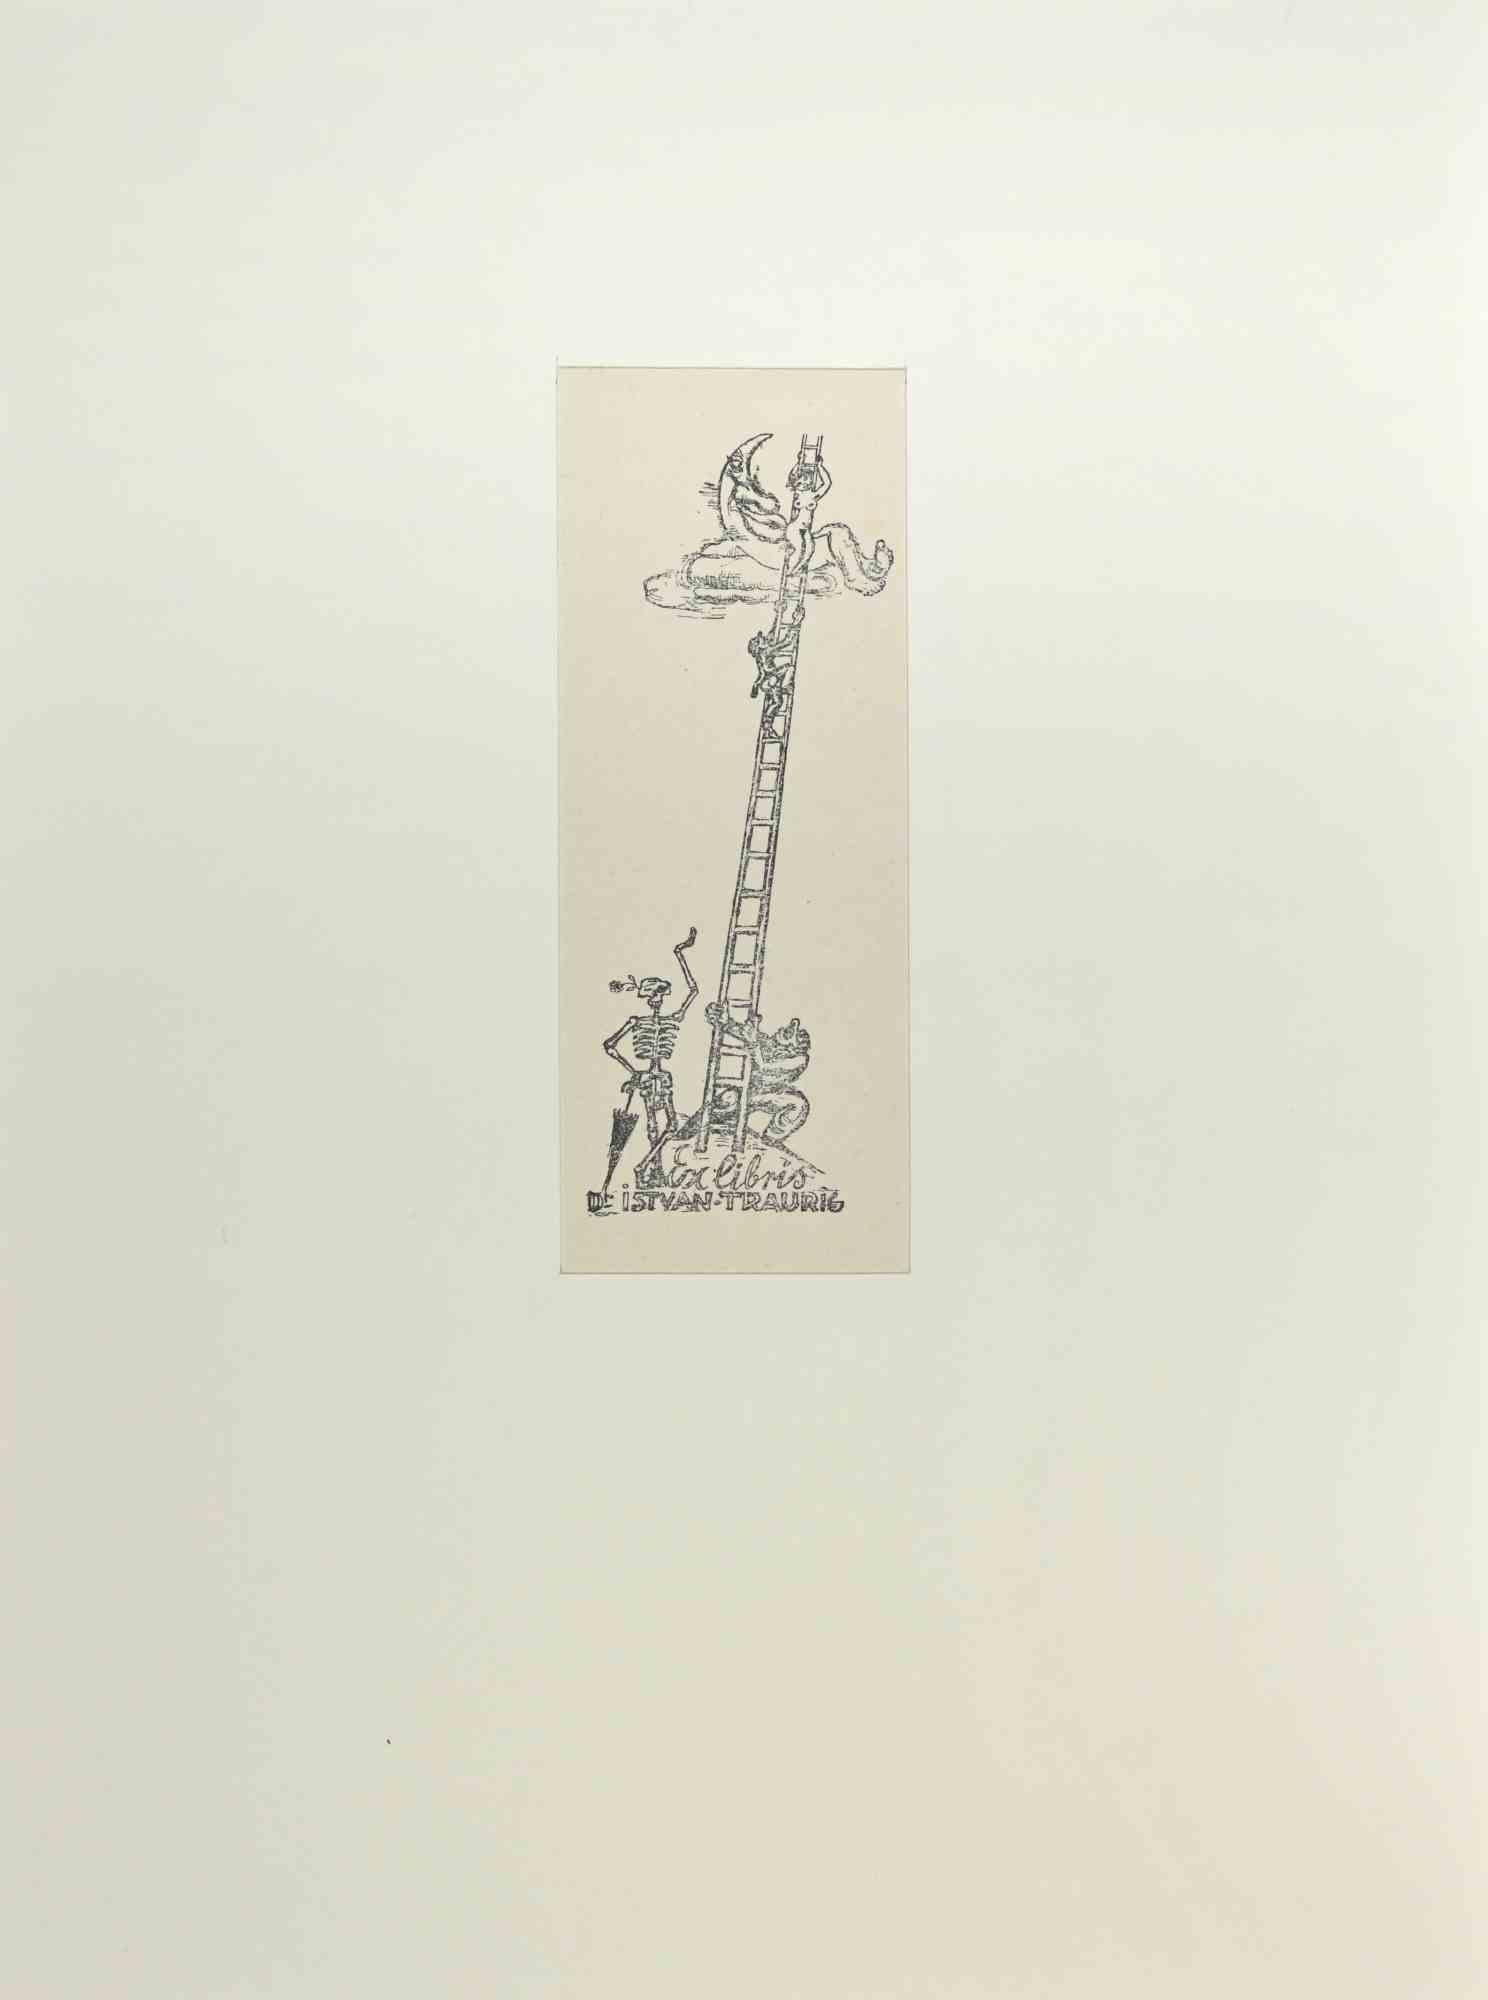 Ex Libris - Istvan  Traurig ist ein Holzschnitt, erstellt von  Michel Fingesten.

Signiert auf der Platte auf der Rückseite. Das Werk ist auf Karton geklebt.

Abmessungen insgesamt: cm 32x24

Gute Bedingungen.

Michel Fingesten (1884 - 1943) war ein